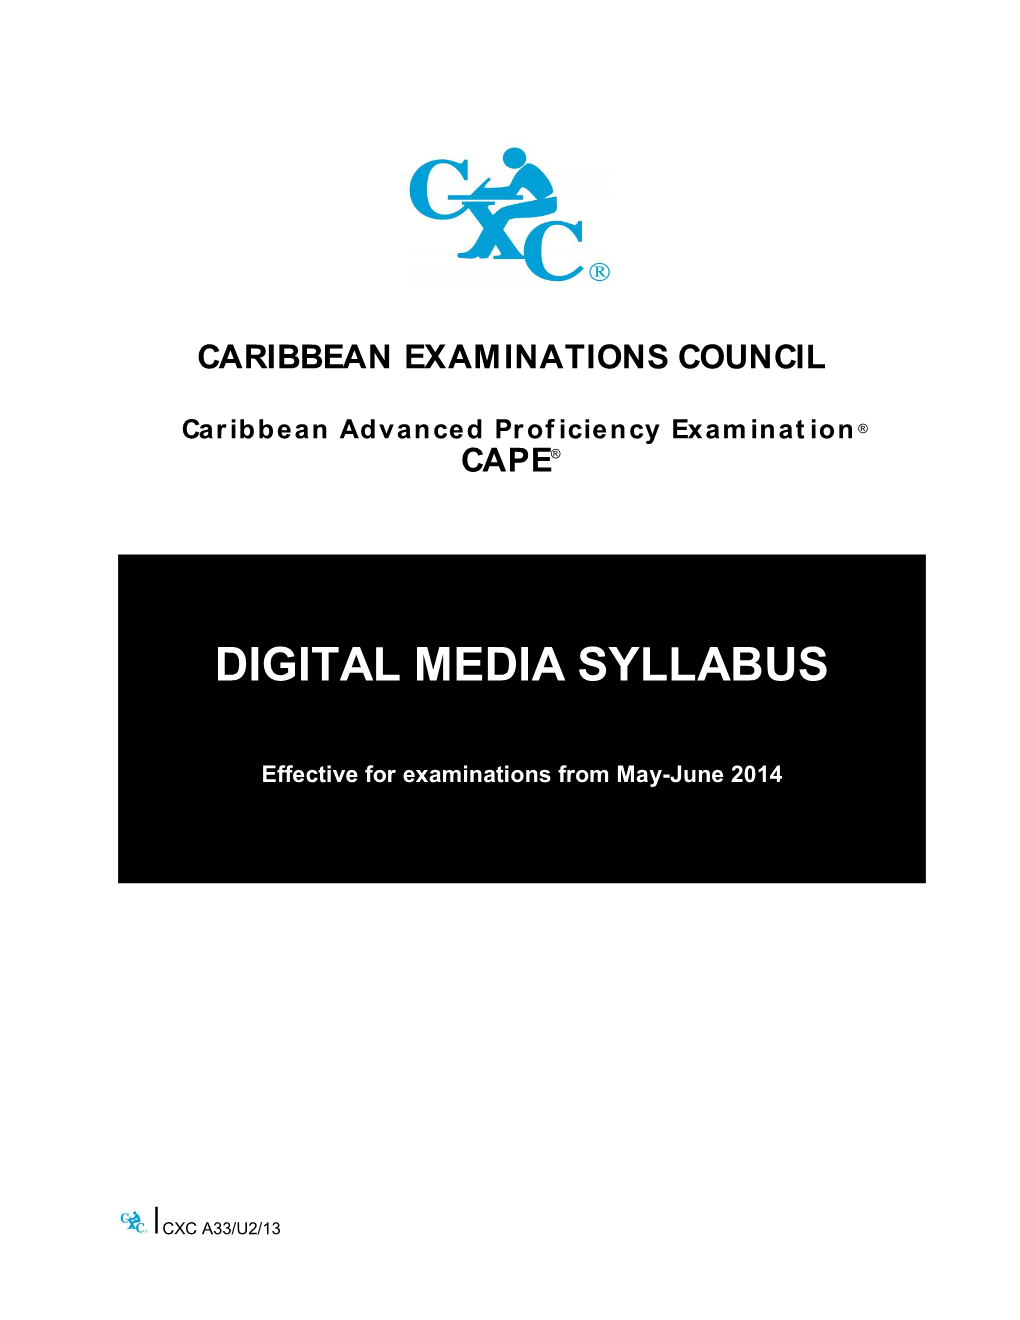 The Caribbean Advanced Proficiency Examinations